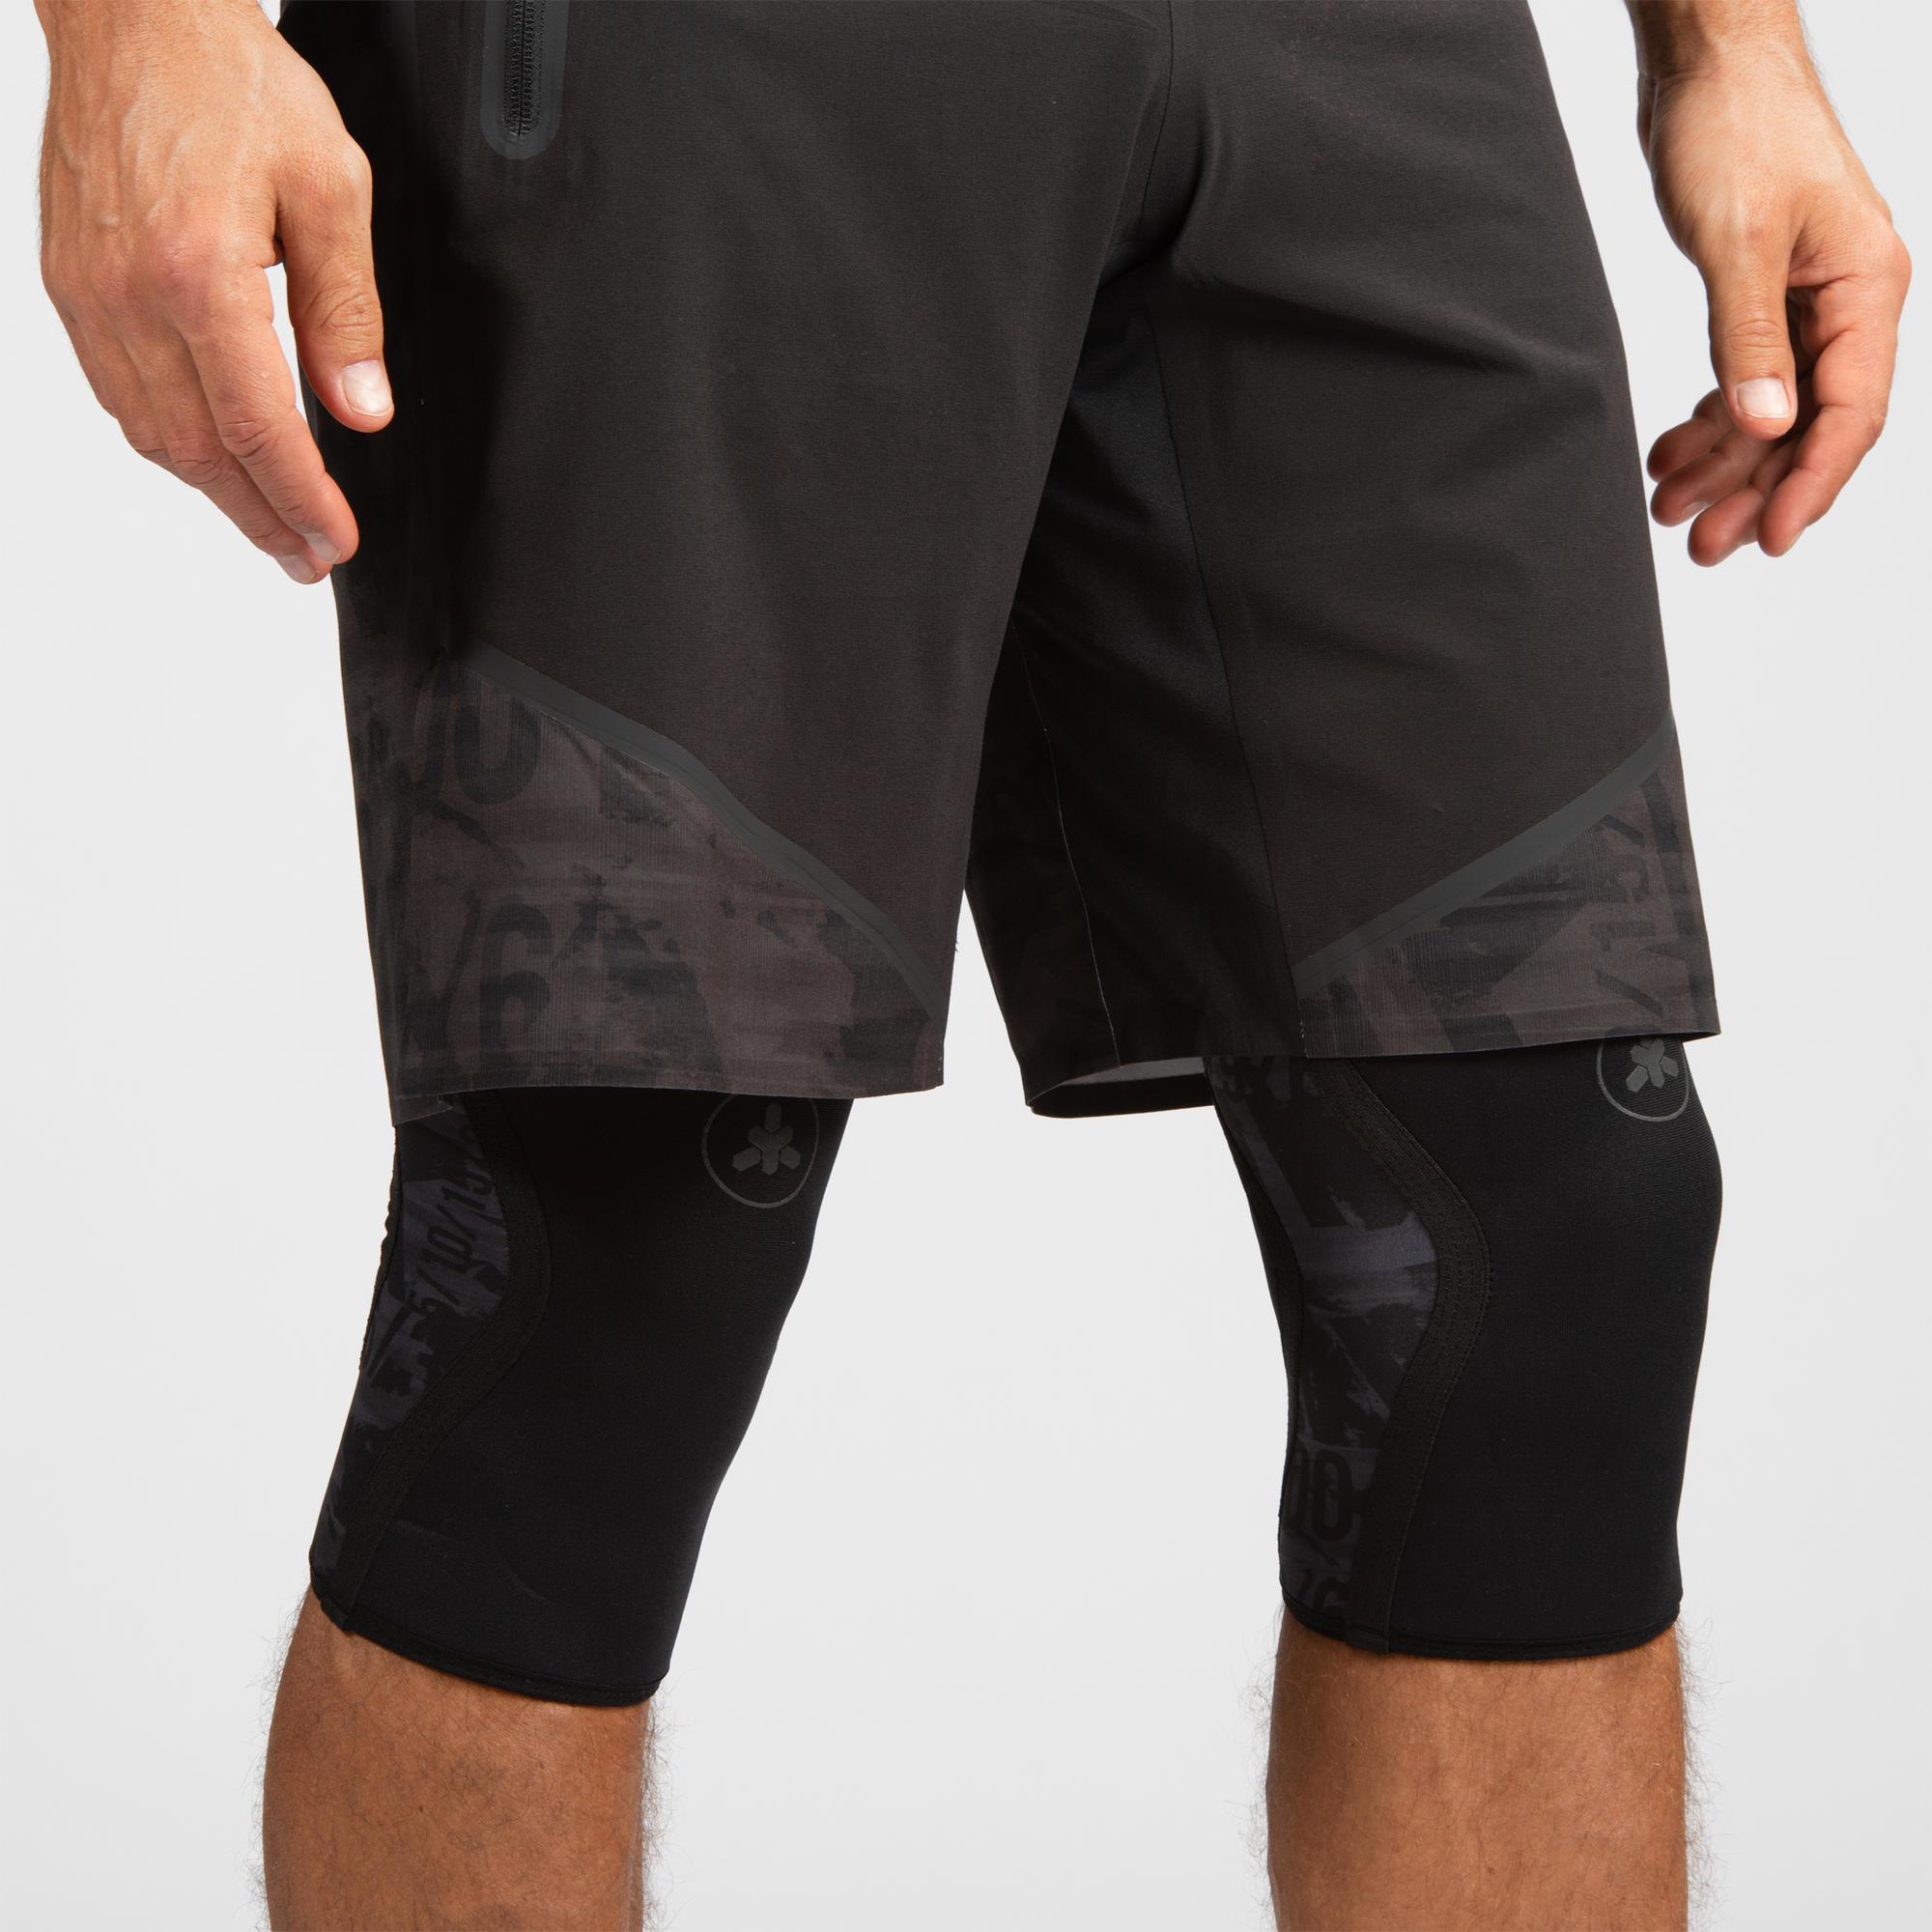 decathlon knee sleeves